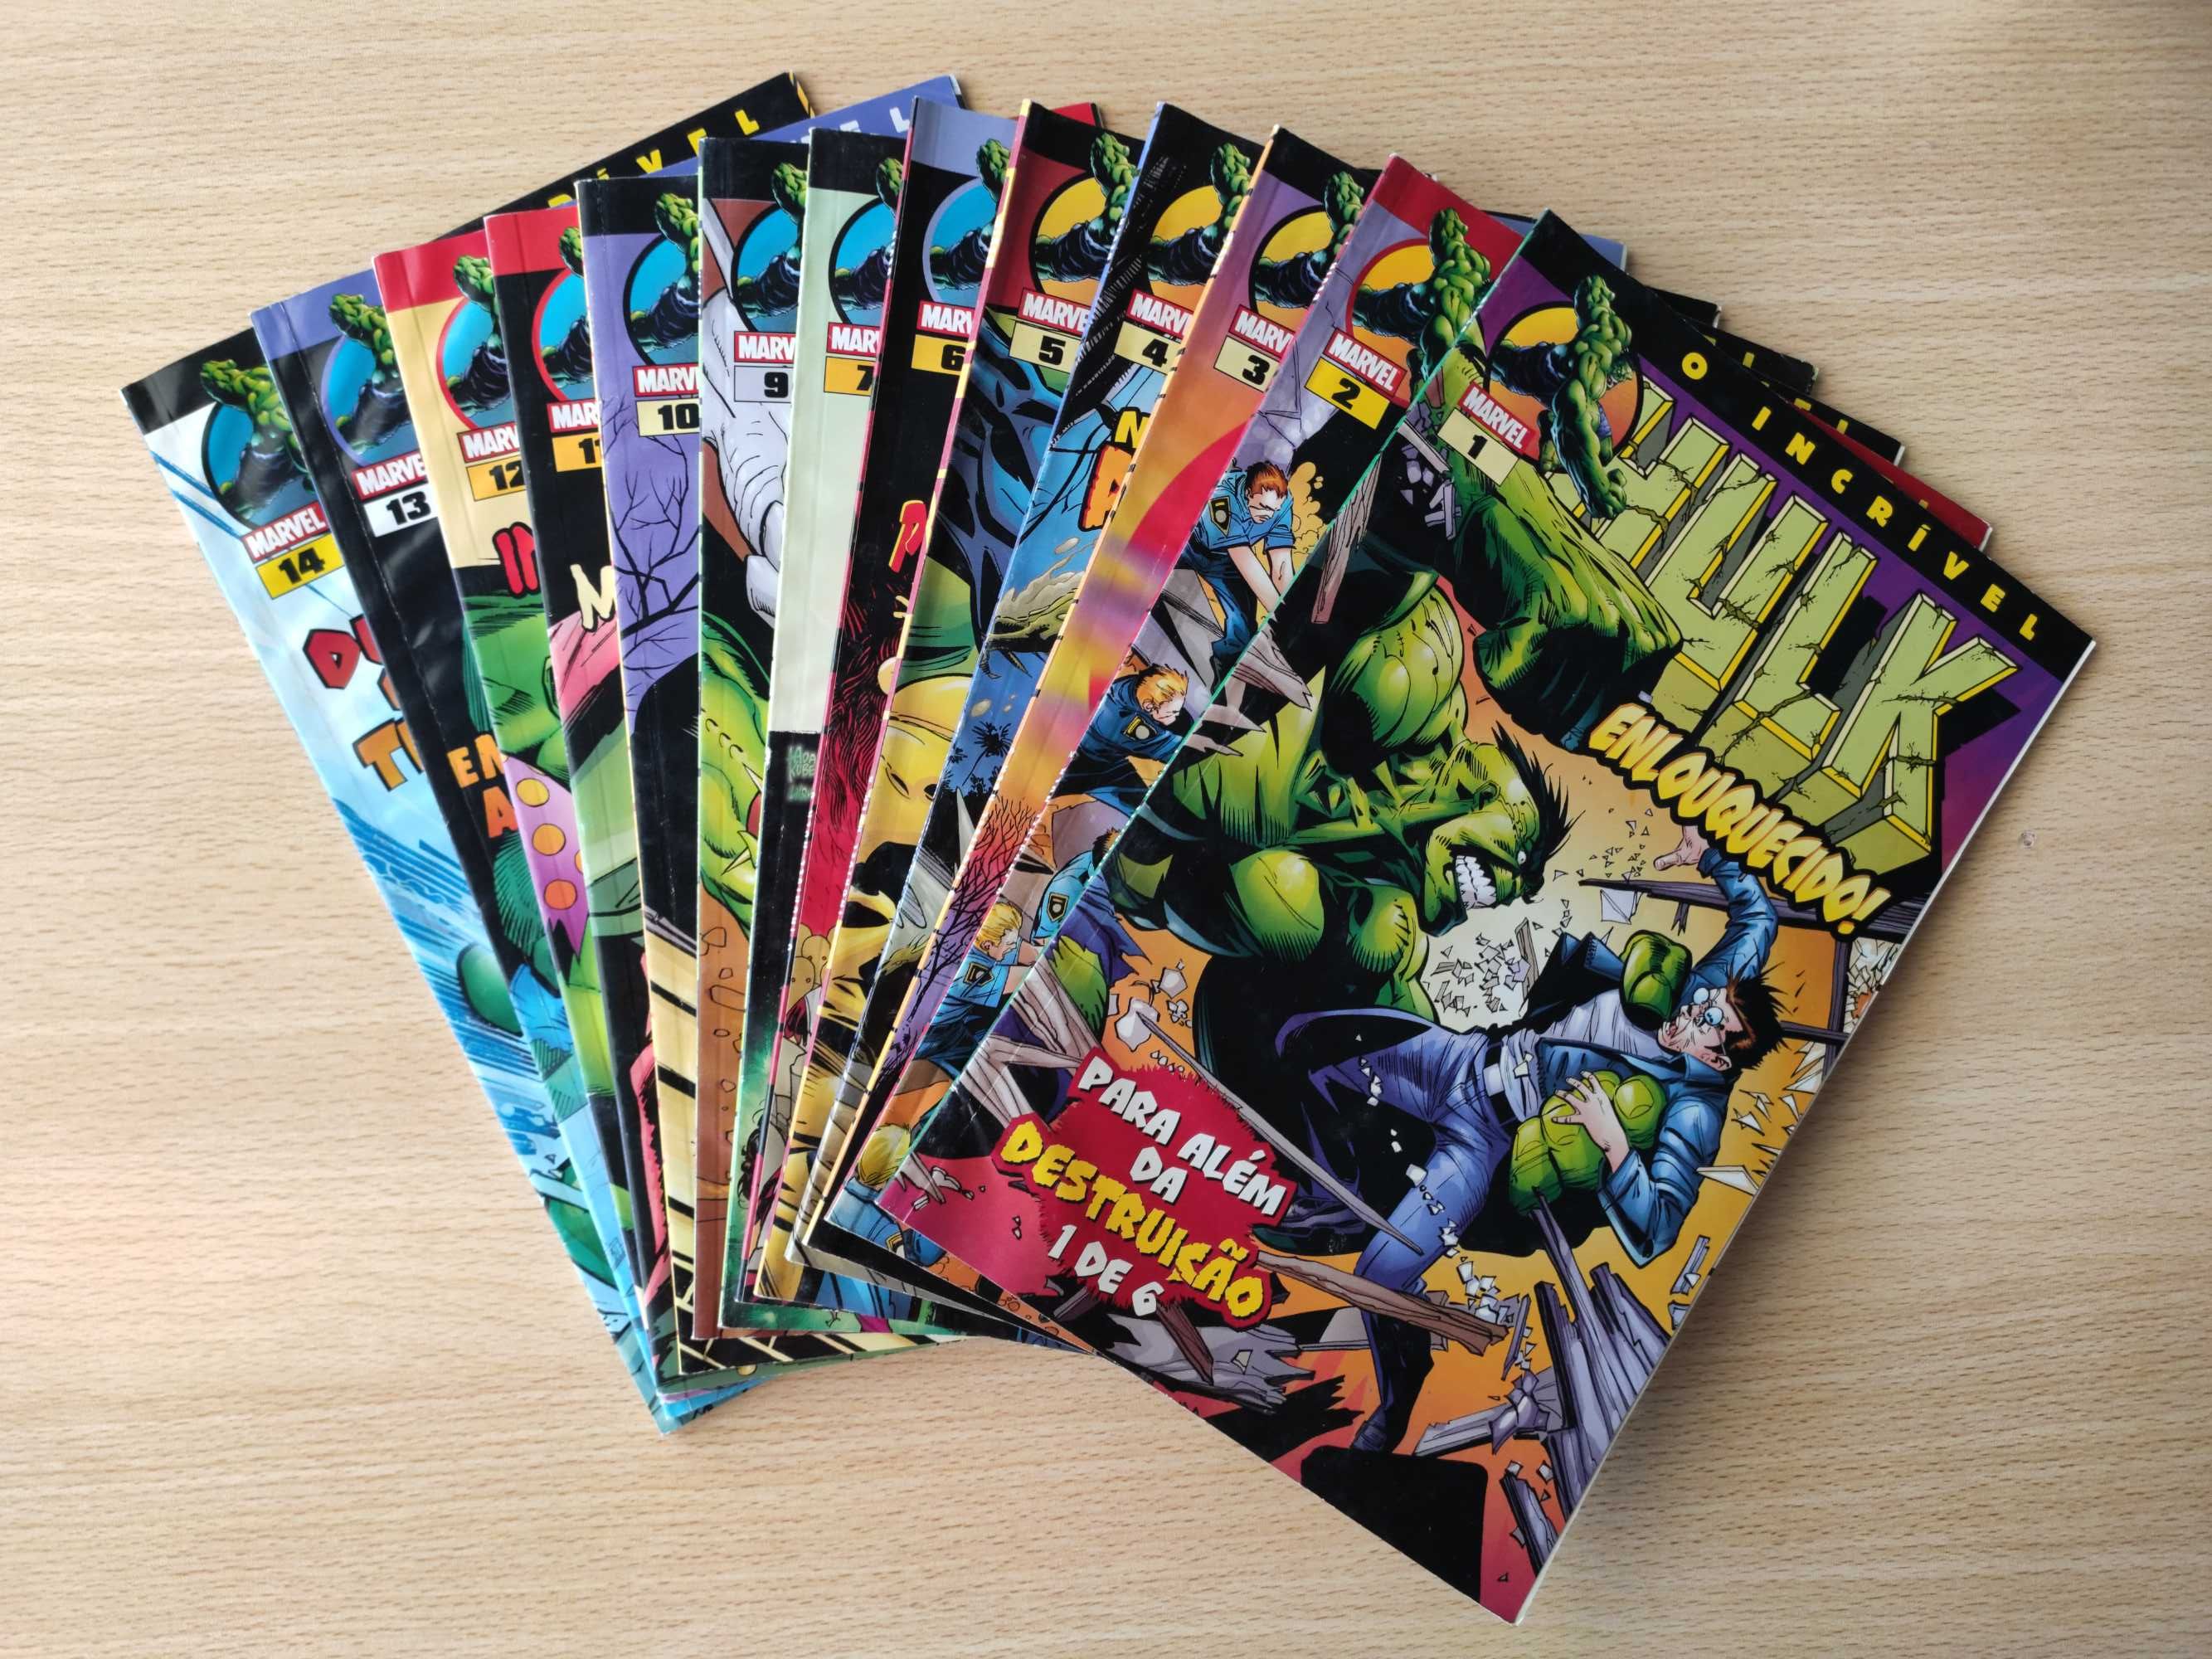 Coleção de 14 volumes Jornal de Noticias/Devir - O Incrível Hulk